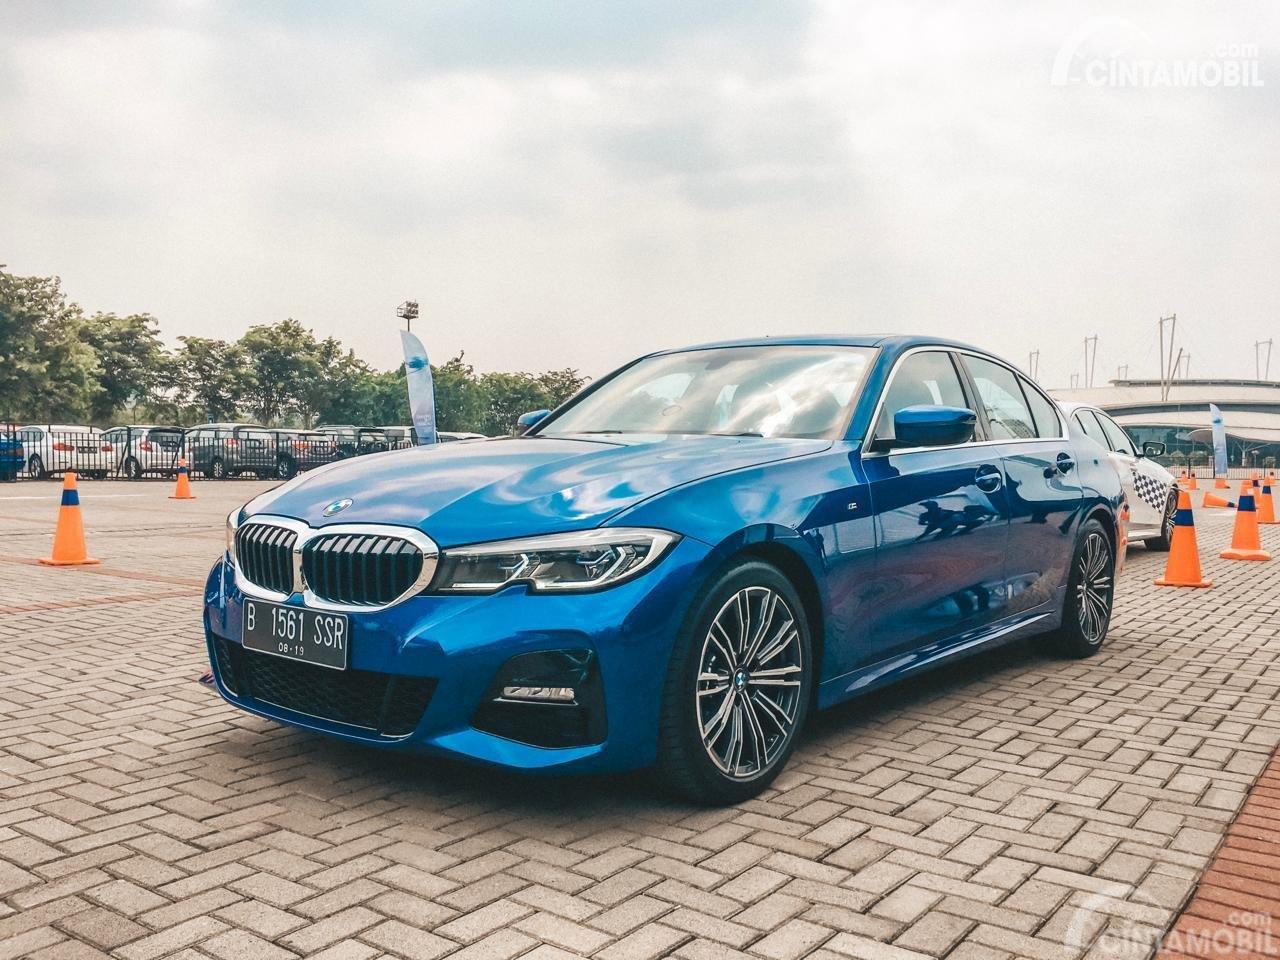 Pembaruan harga mobil BMW terbaru November 2020 Di Indonesia